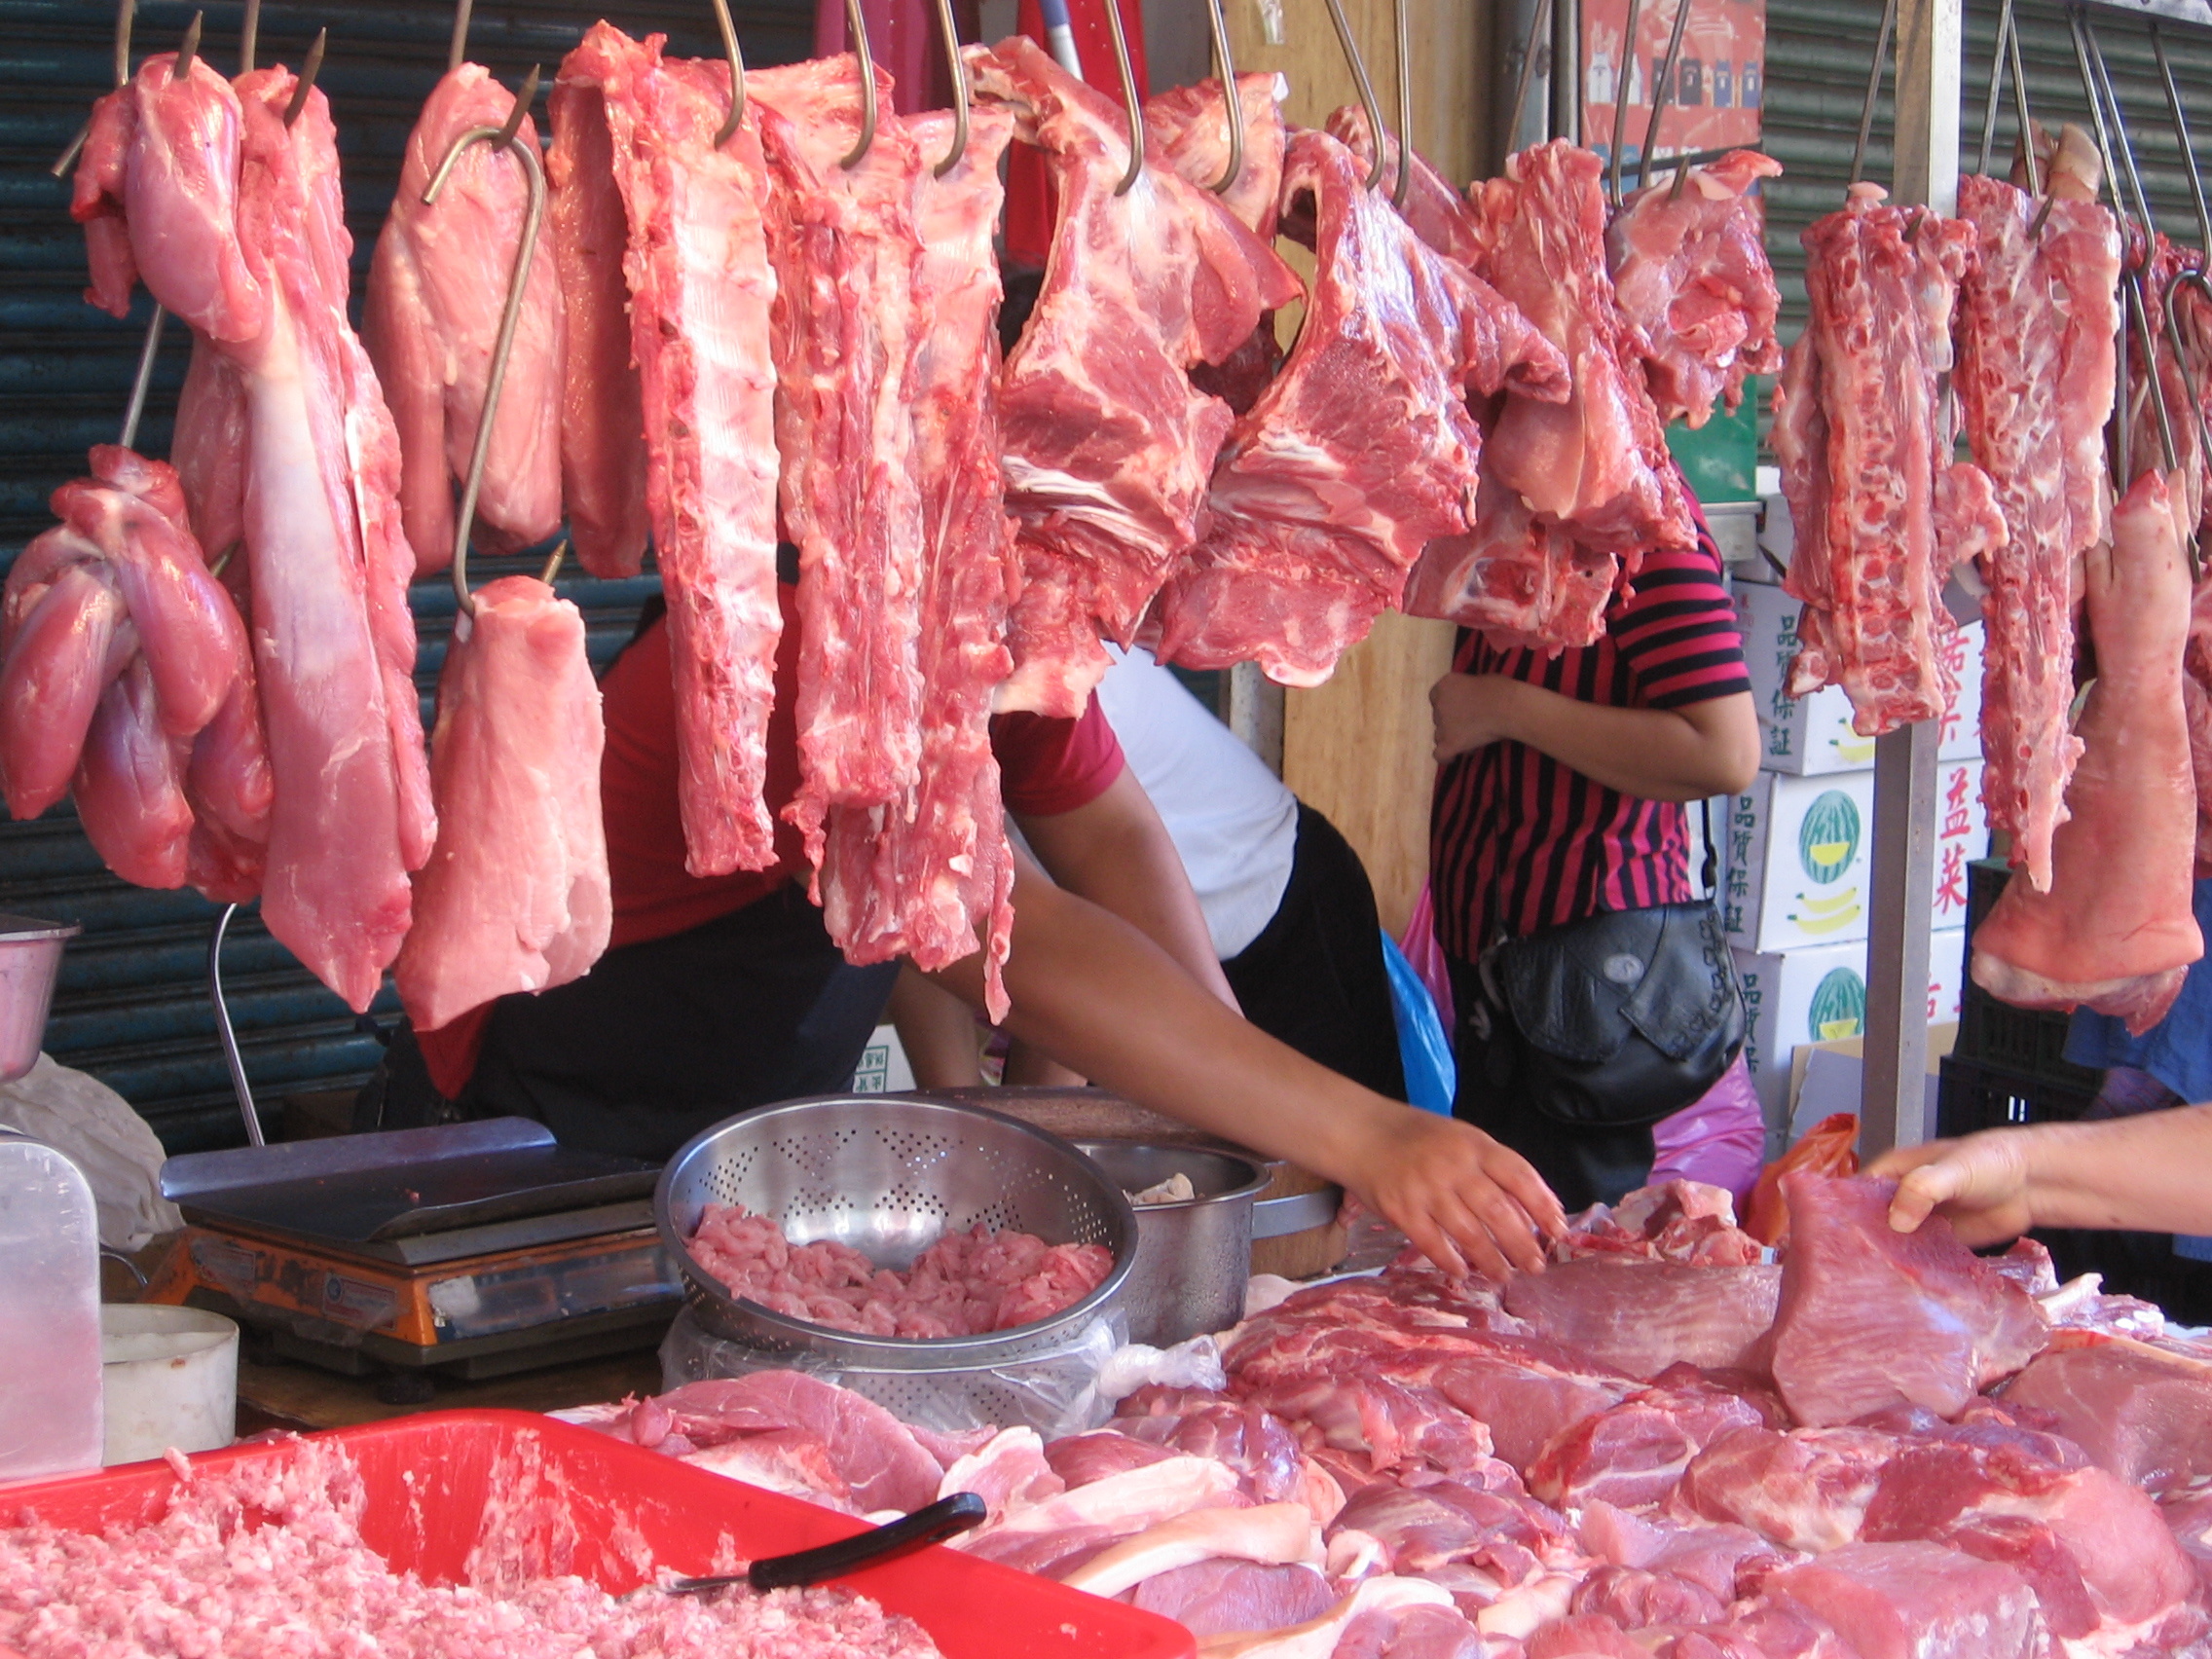 wet market selling pork